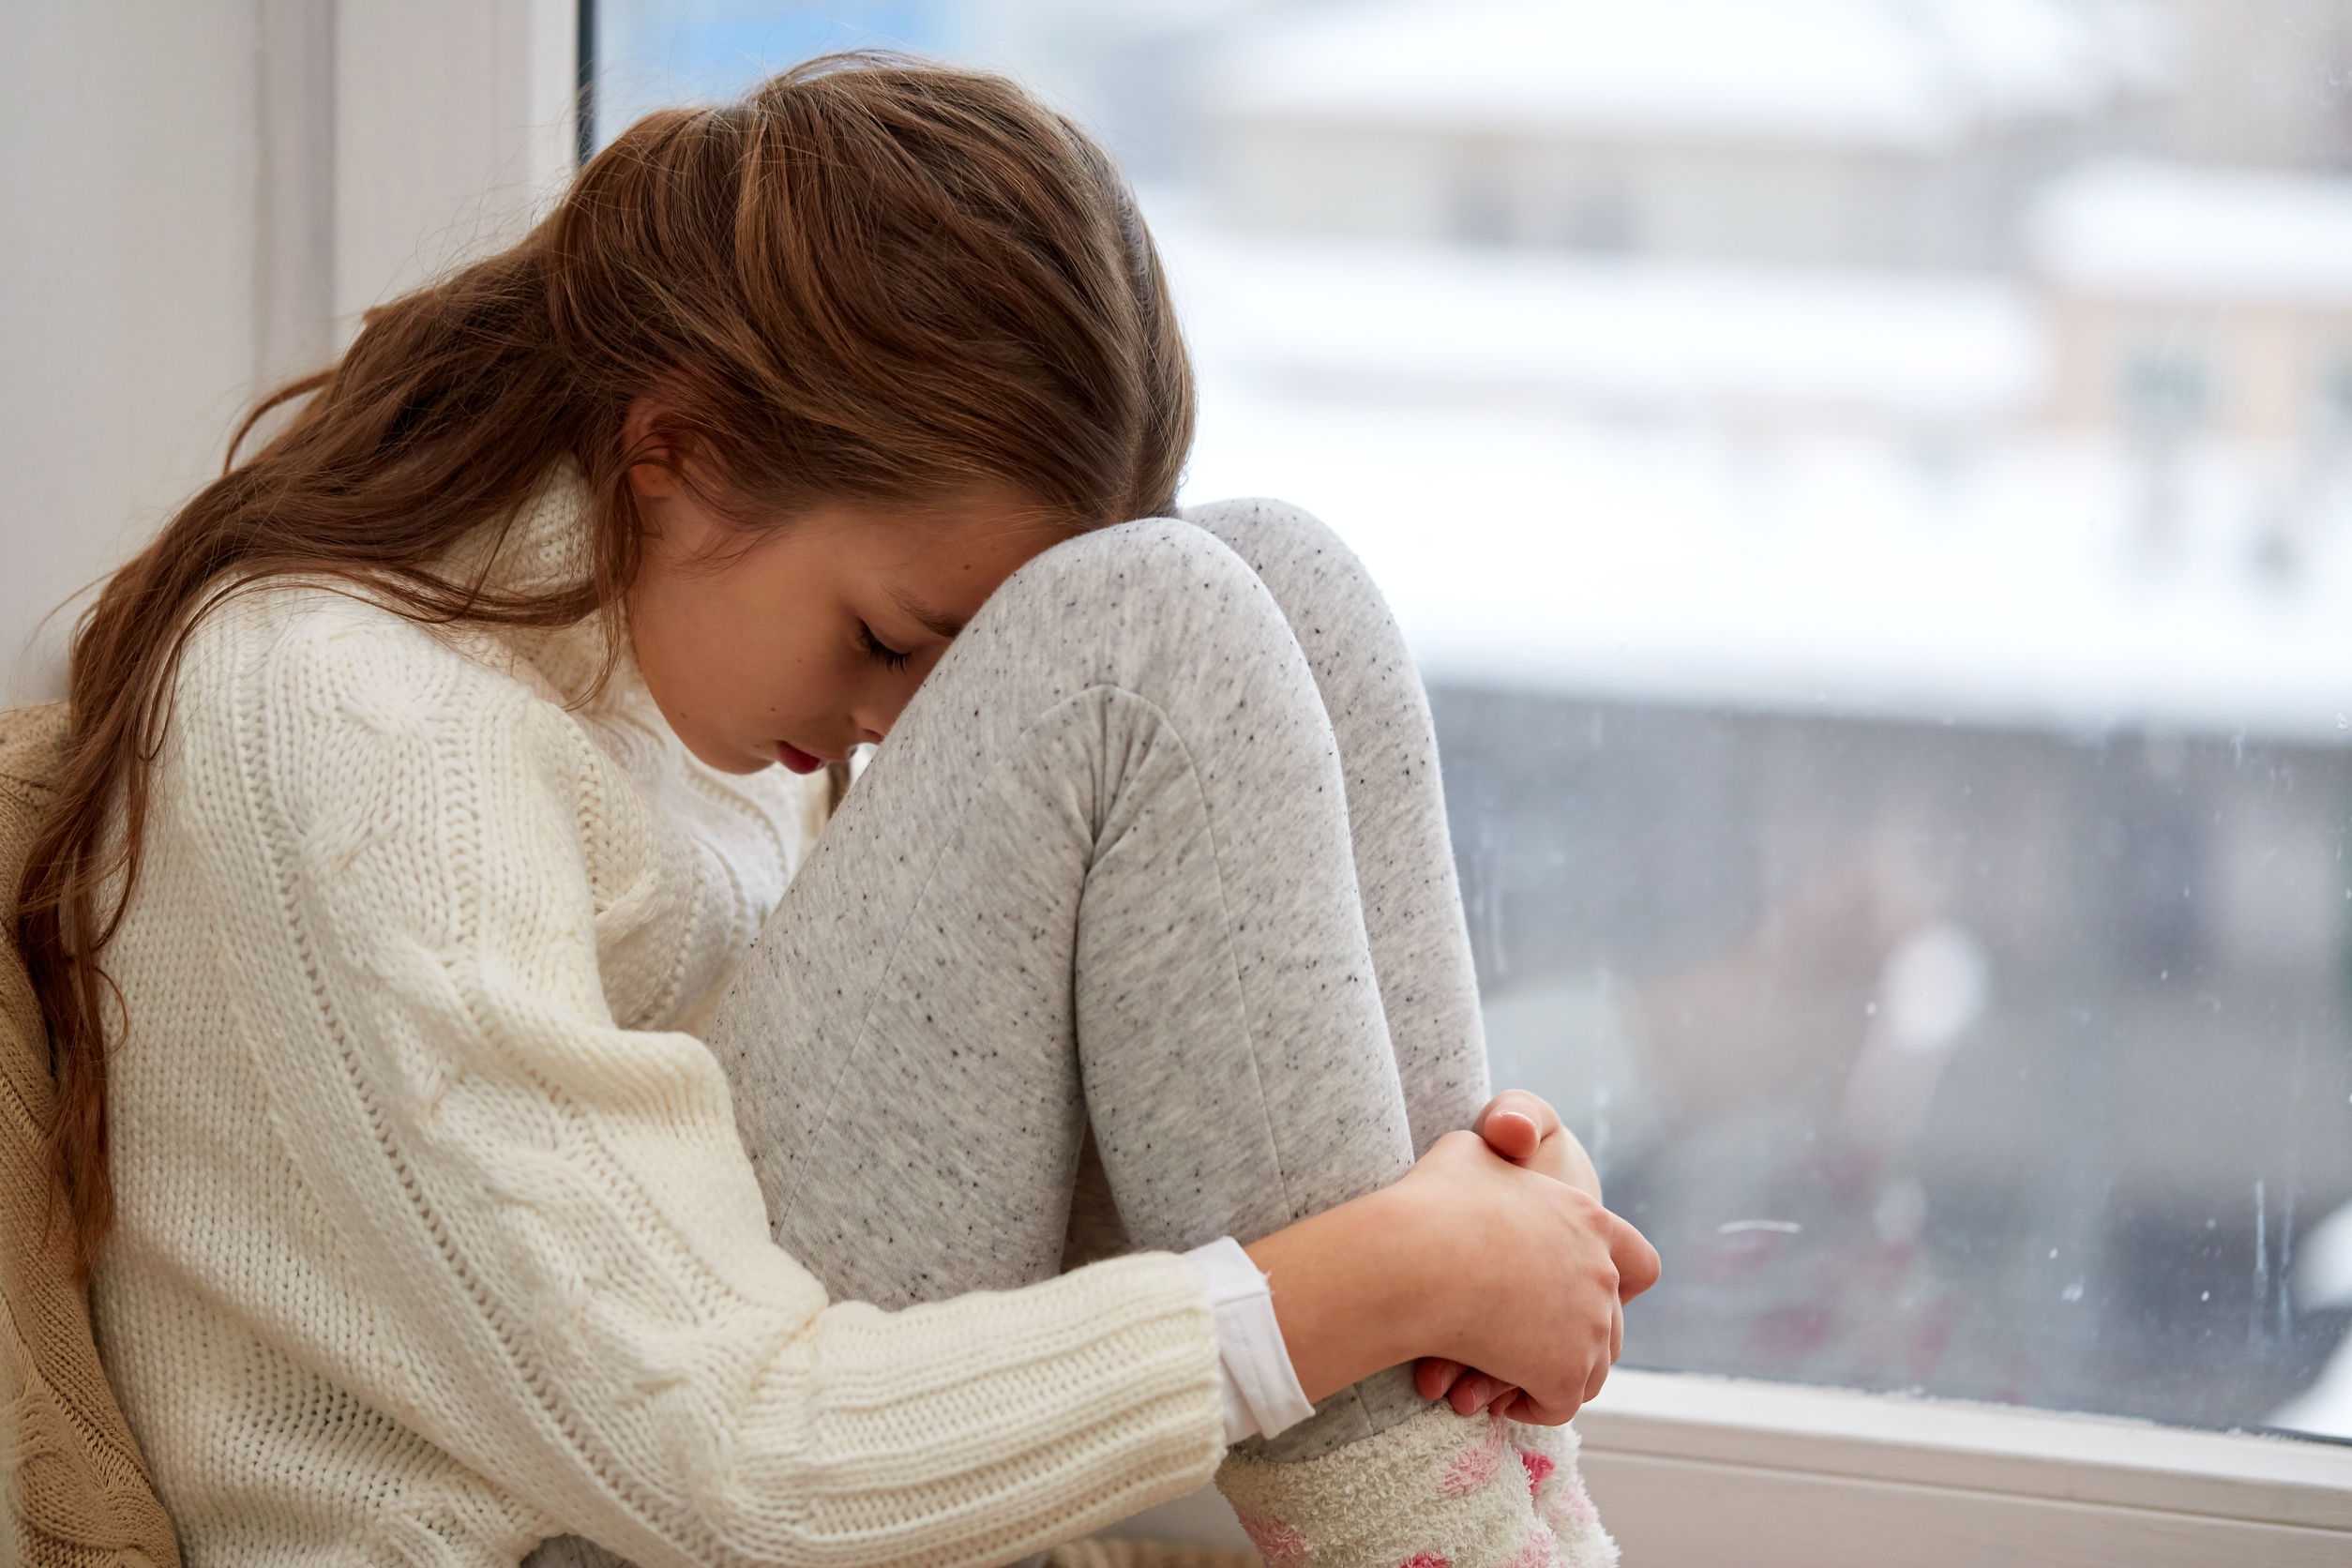 Признаки депрессии у подростков: симптомы, как помочь, как выйти самостоятельно